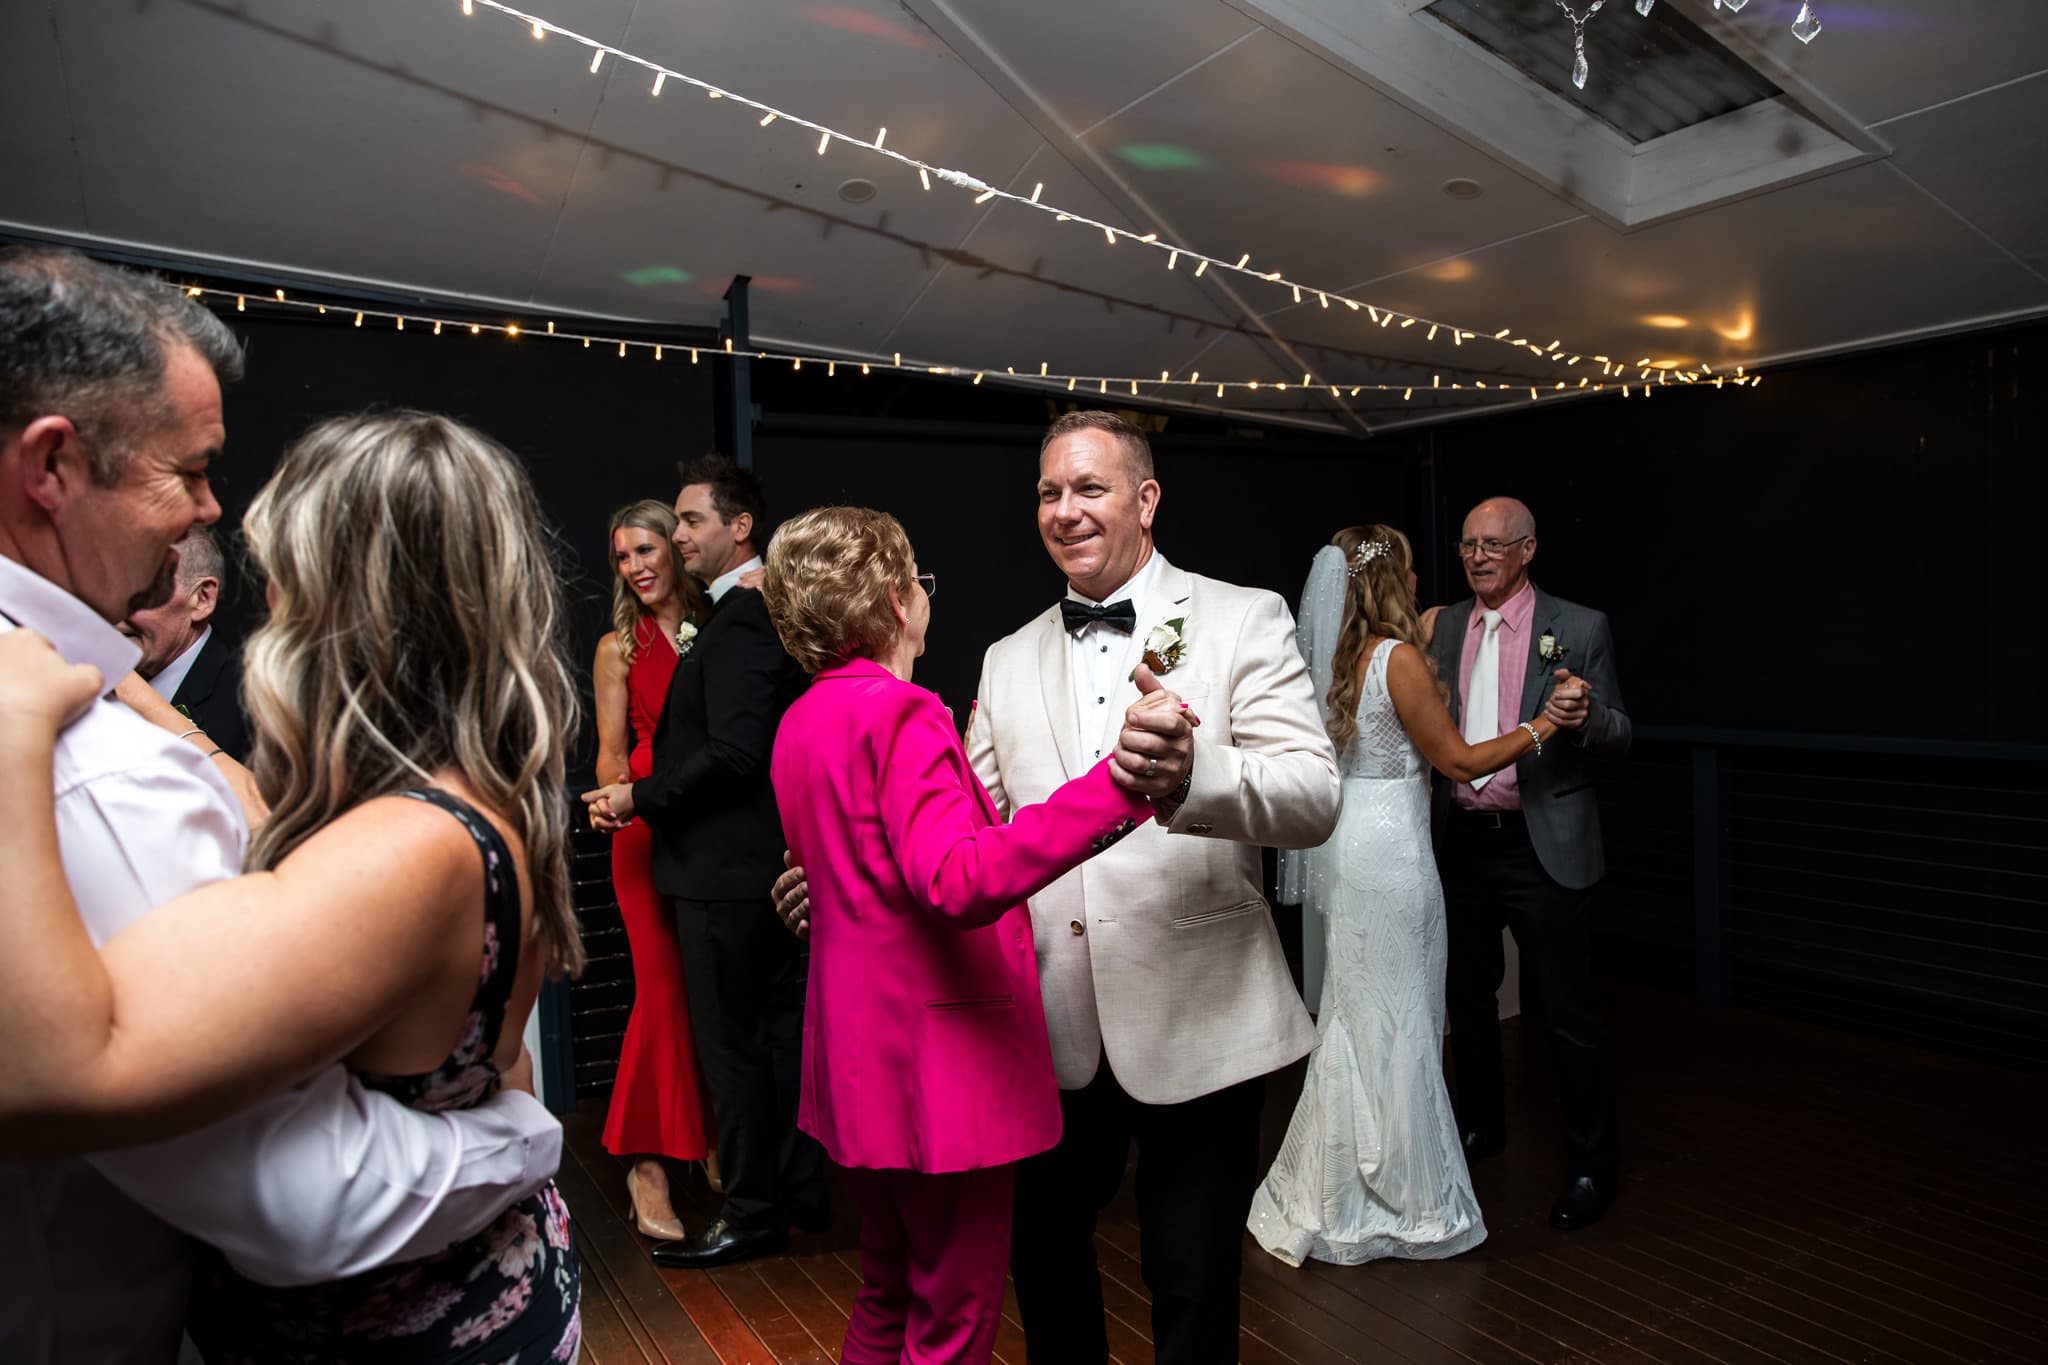 Wedding couple dancing at the reception photos at The Secret Garden Estate, Tamborine Mountain.